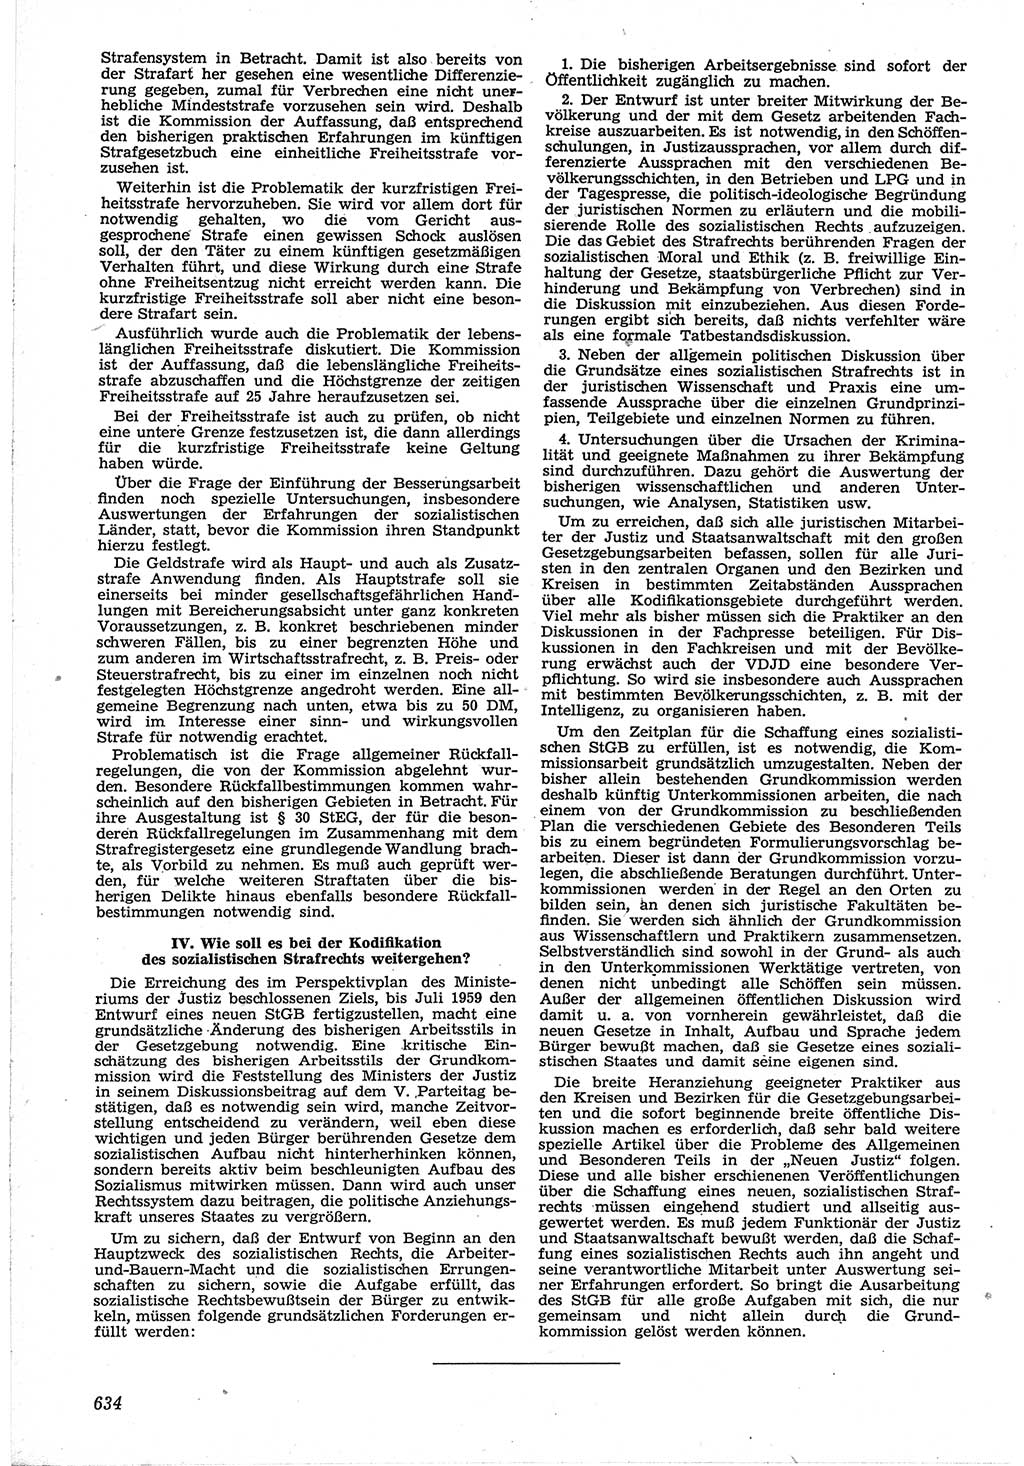 Neue Justiz (NJ), Zeitschrift für Recht und Rechtswissenschaft [Deutsche Demokratische Republik (DDR)], 12. Jahrgang 1958, Seite 634 (NJ DDR 1958, S. 634)